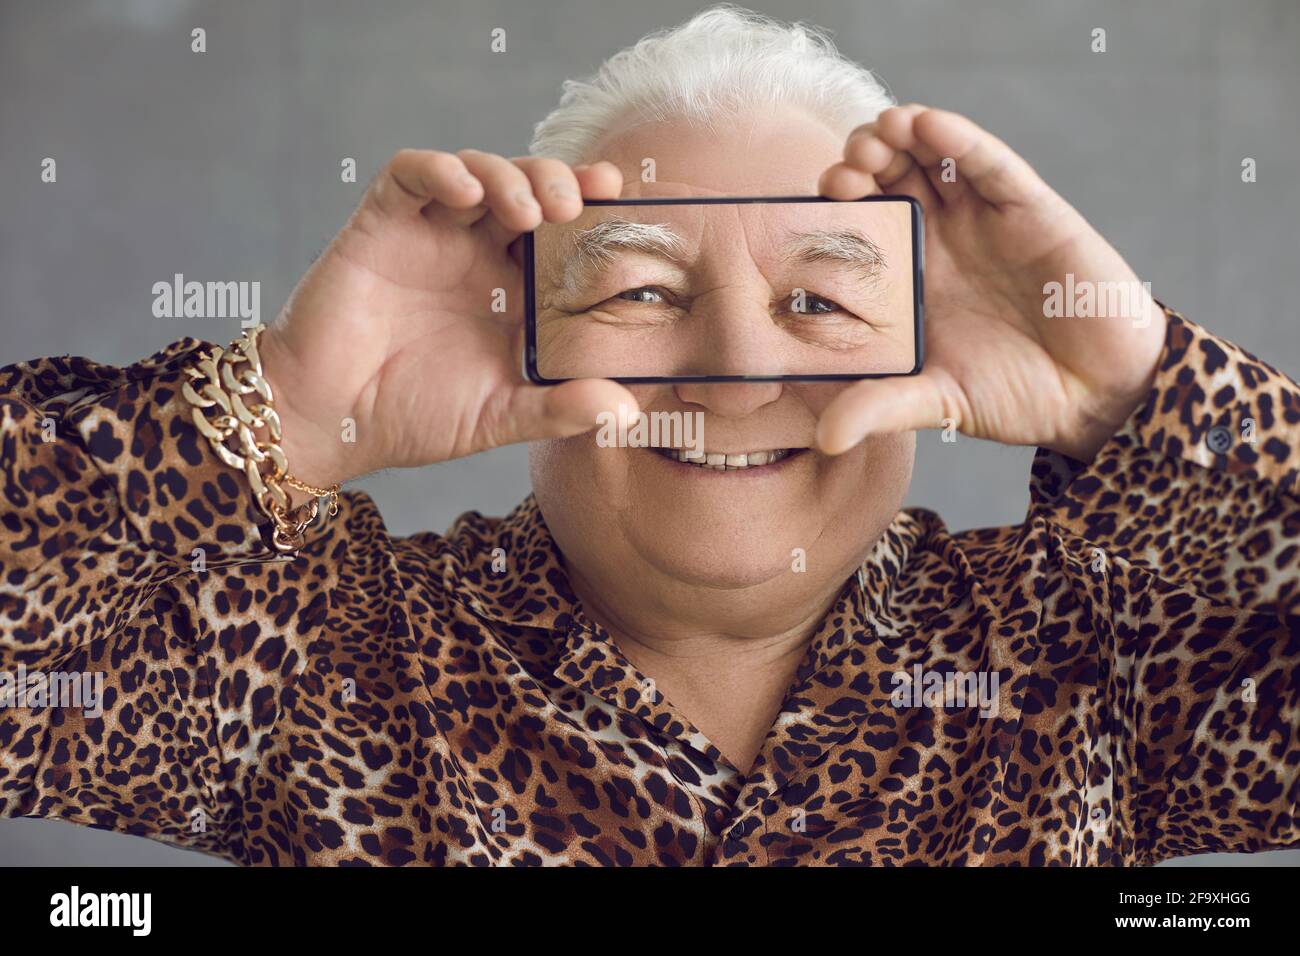 Divertente e ricco Chubby uomo anziano in una camicia leopardo avendo divertimento con il suo telefono cellulare Foto Stock